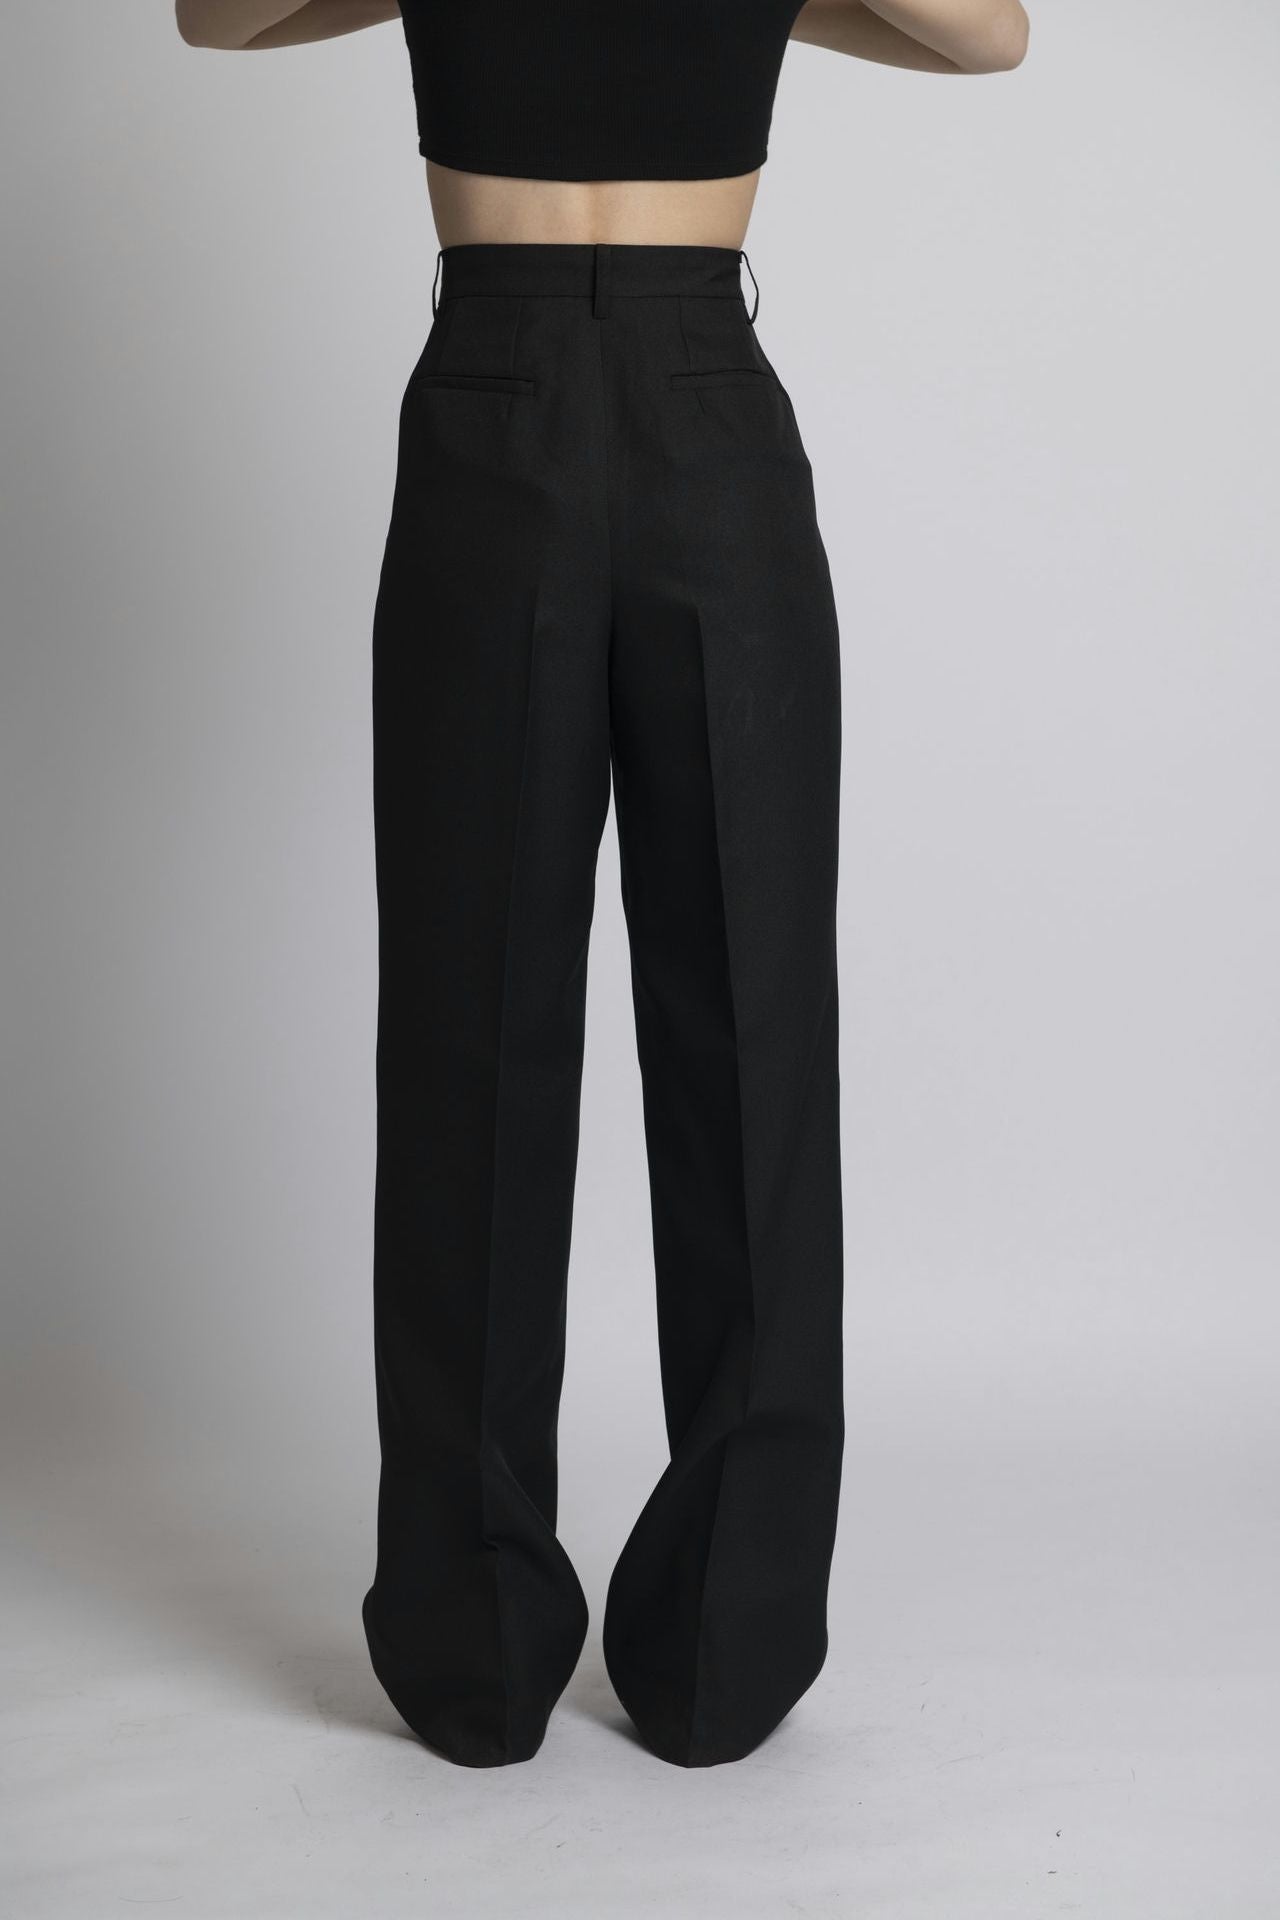 【JOHN LAWRENCE SULLIVAN】 Wide Trouser股上29cm